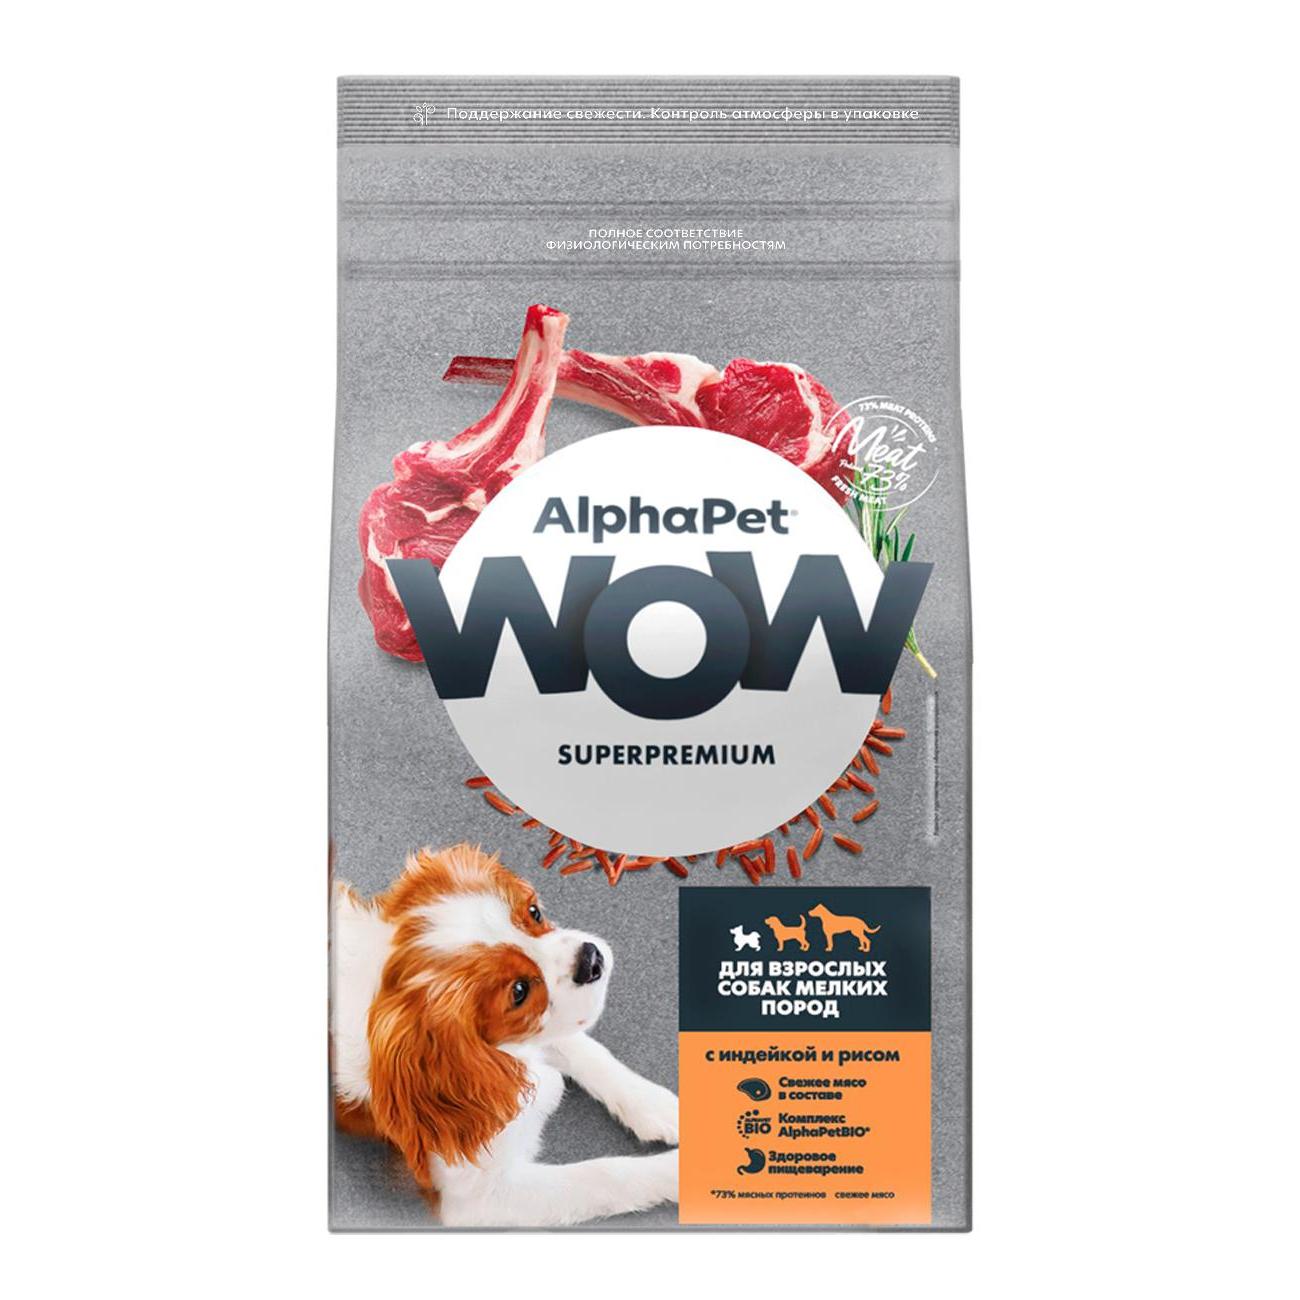 Влажный альфа пет. Alpha Pet wow корм для кошек. Корм для собак мелких пород Alpha Pet. Альфа ПЭТ корм для собак. Корм для собак Alpha Pet для щенков.